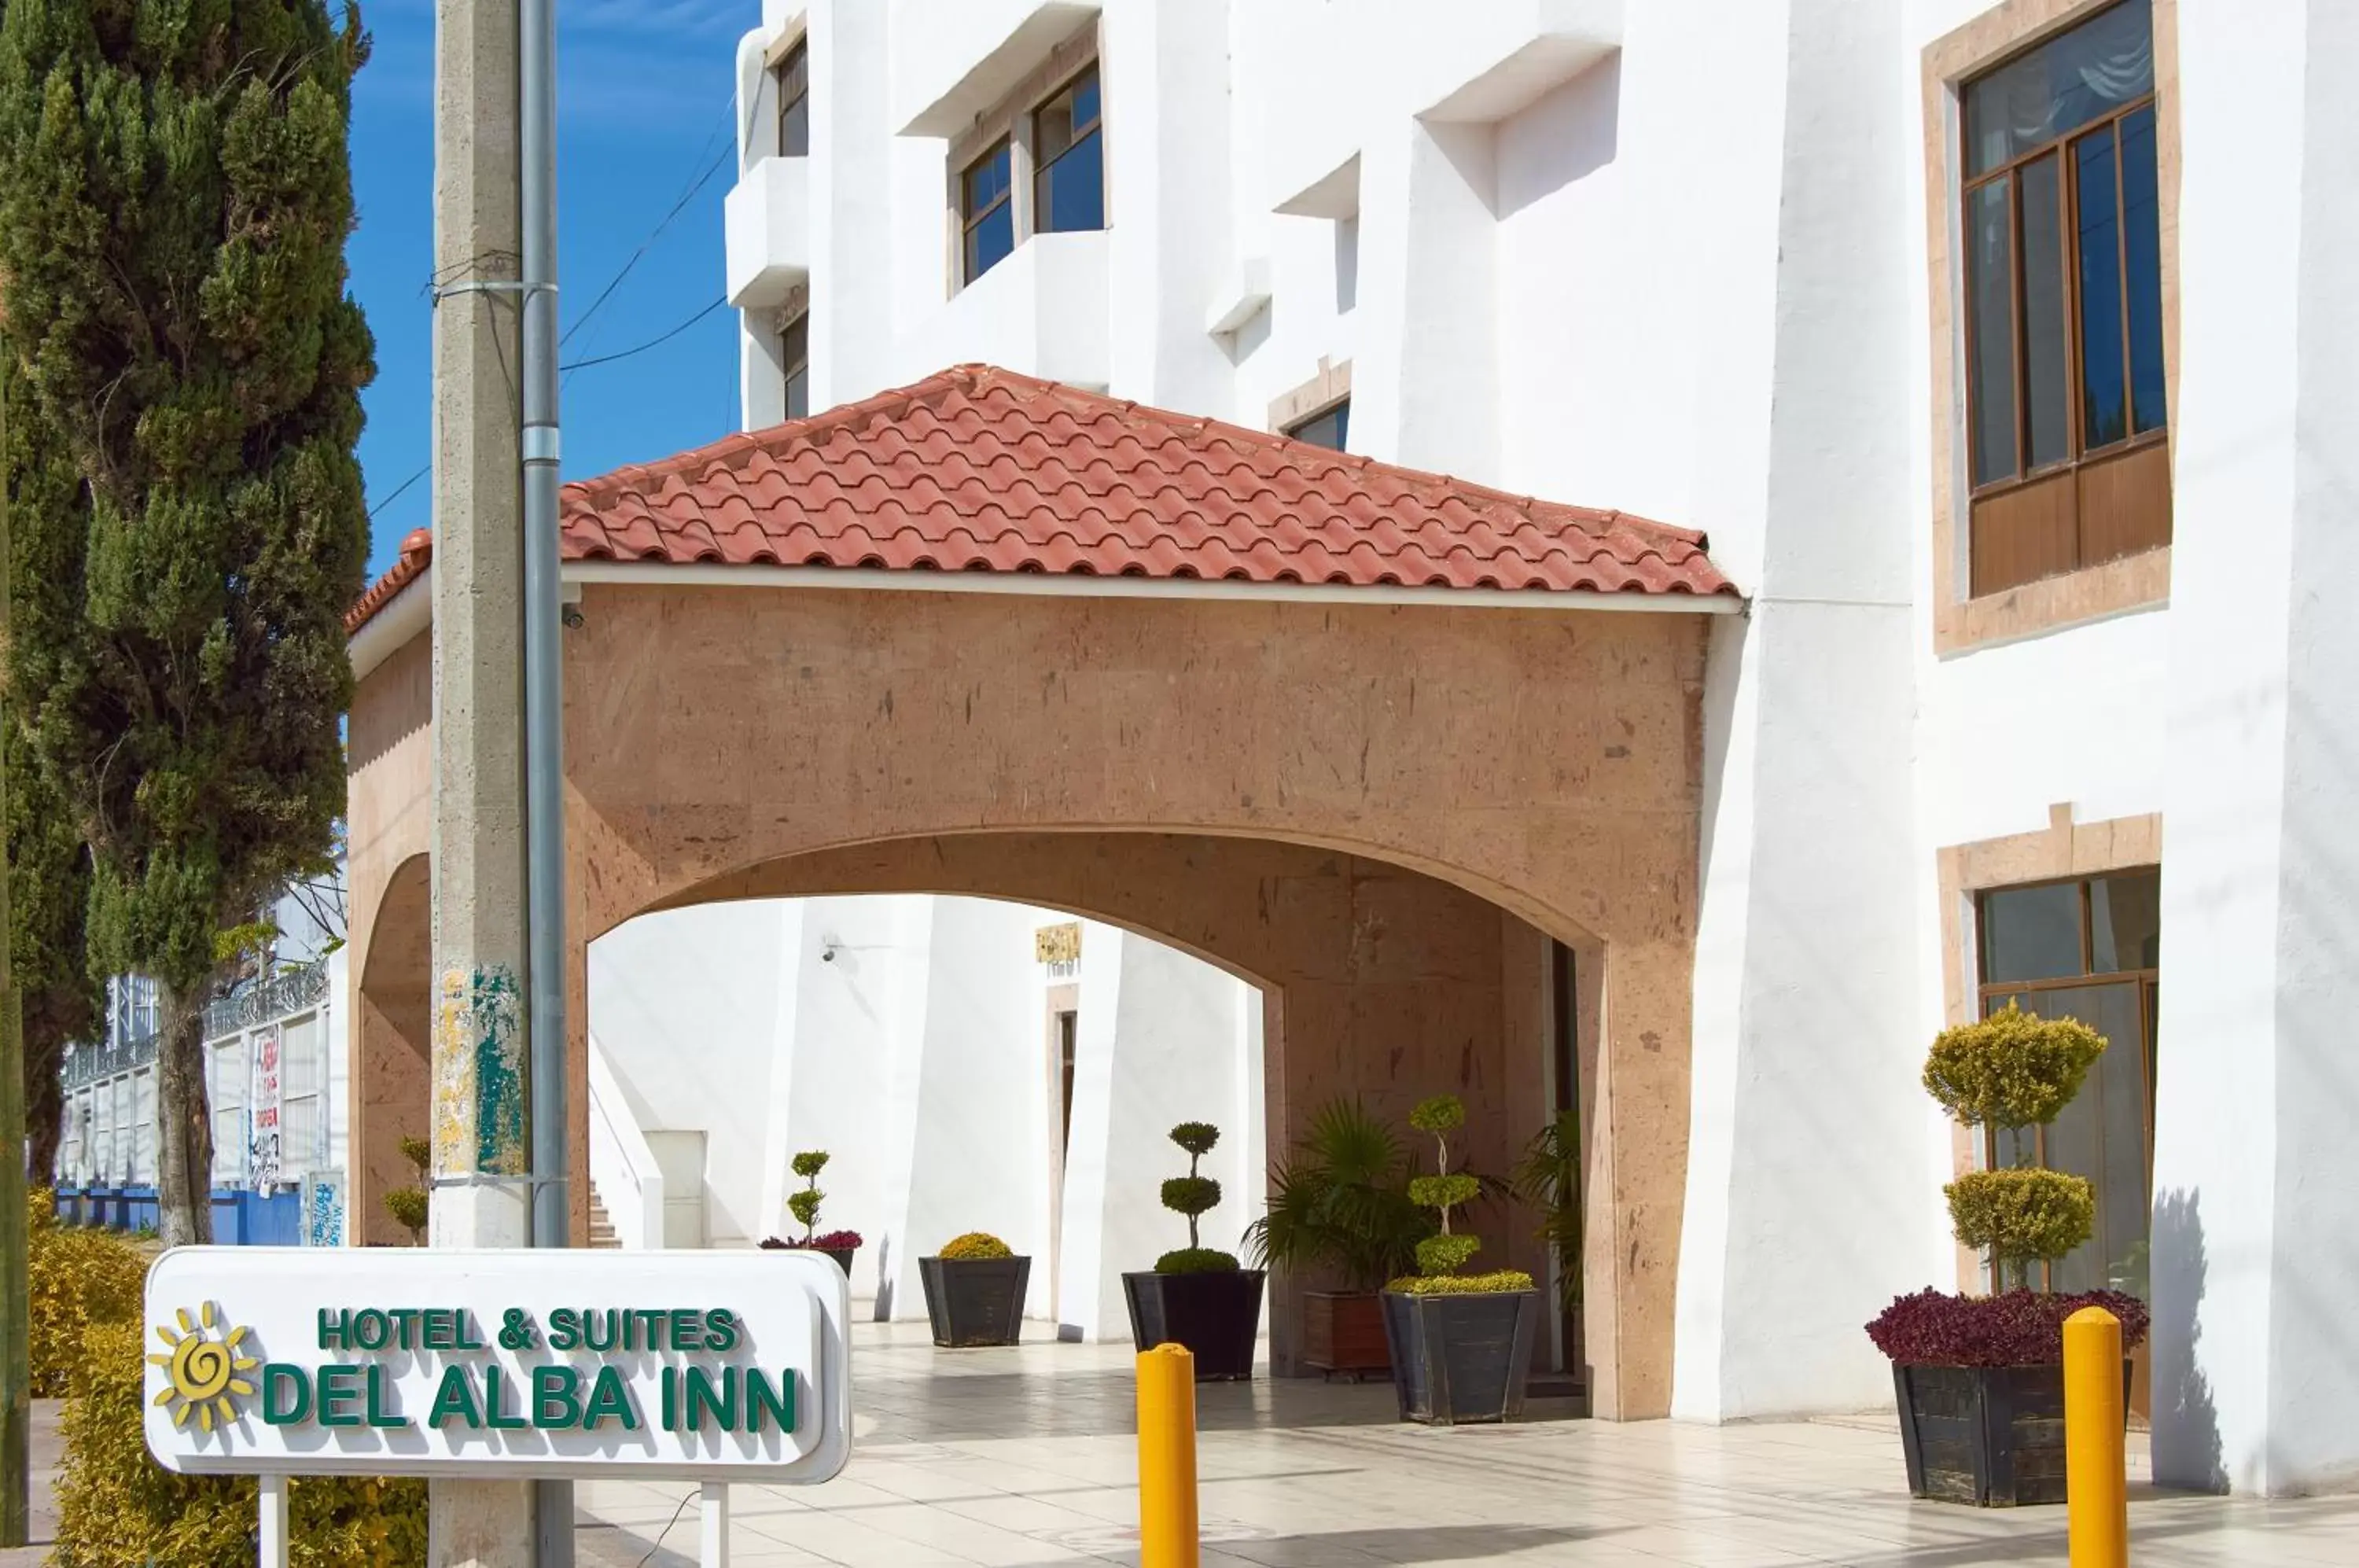 Facade/entrance in Hotel del Alba Inn & Suites